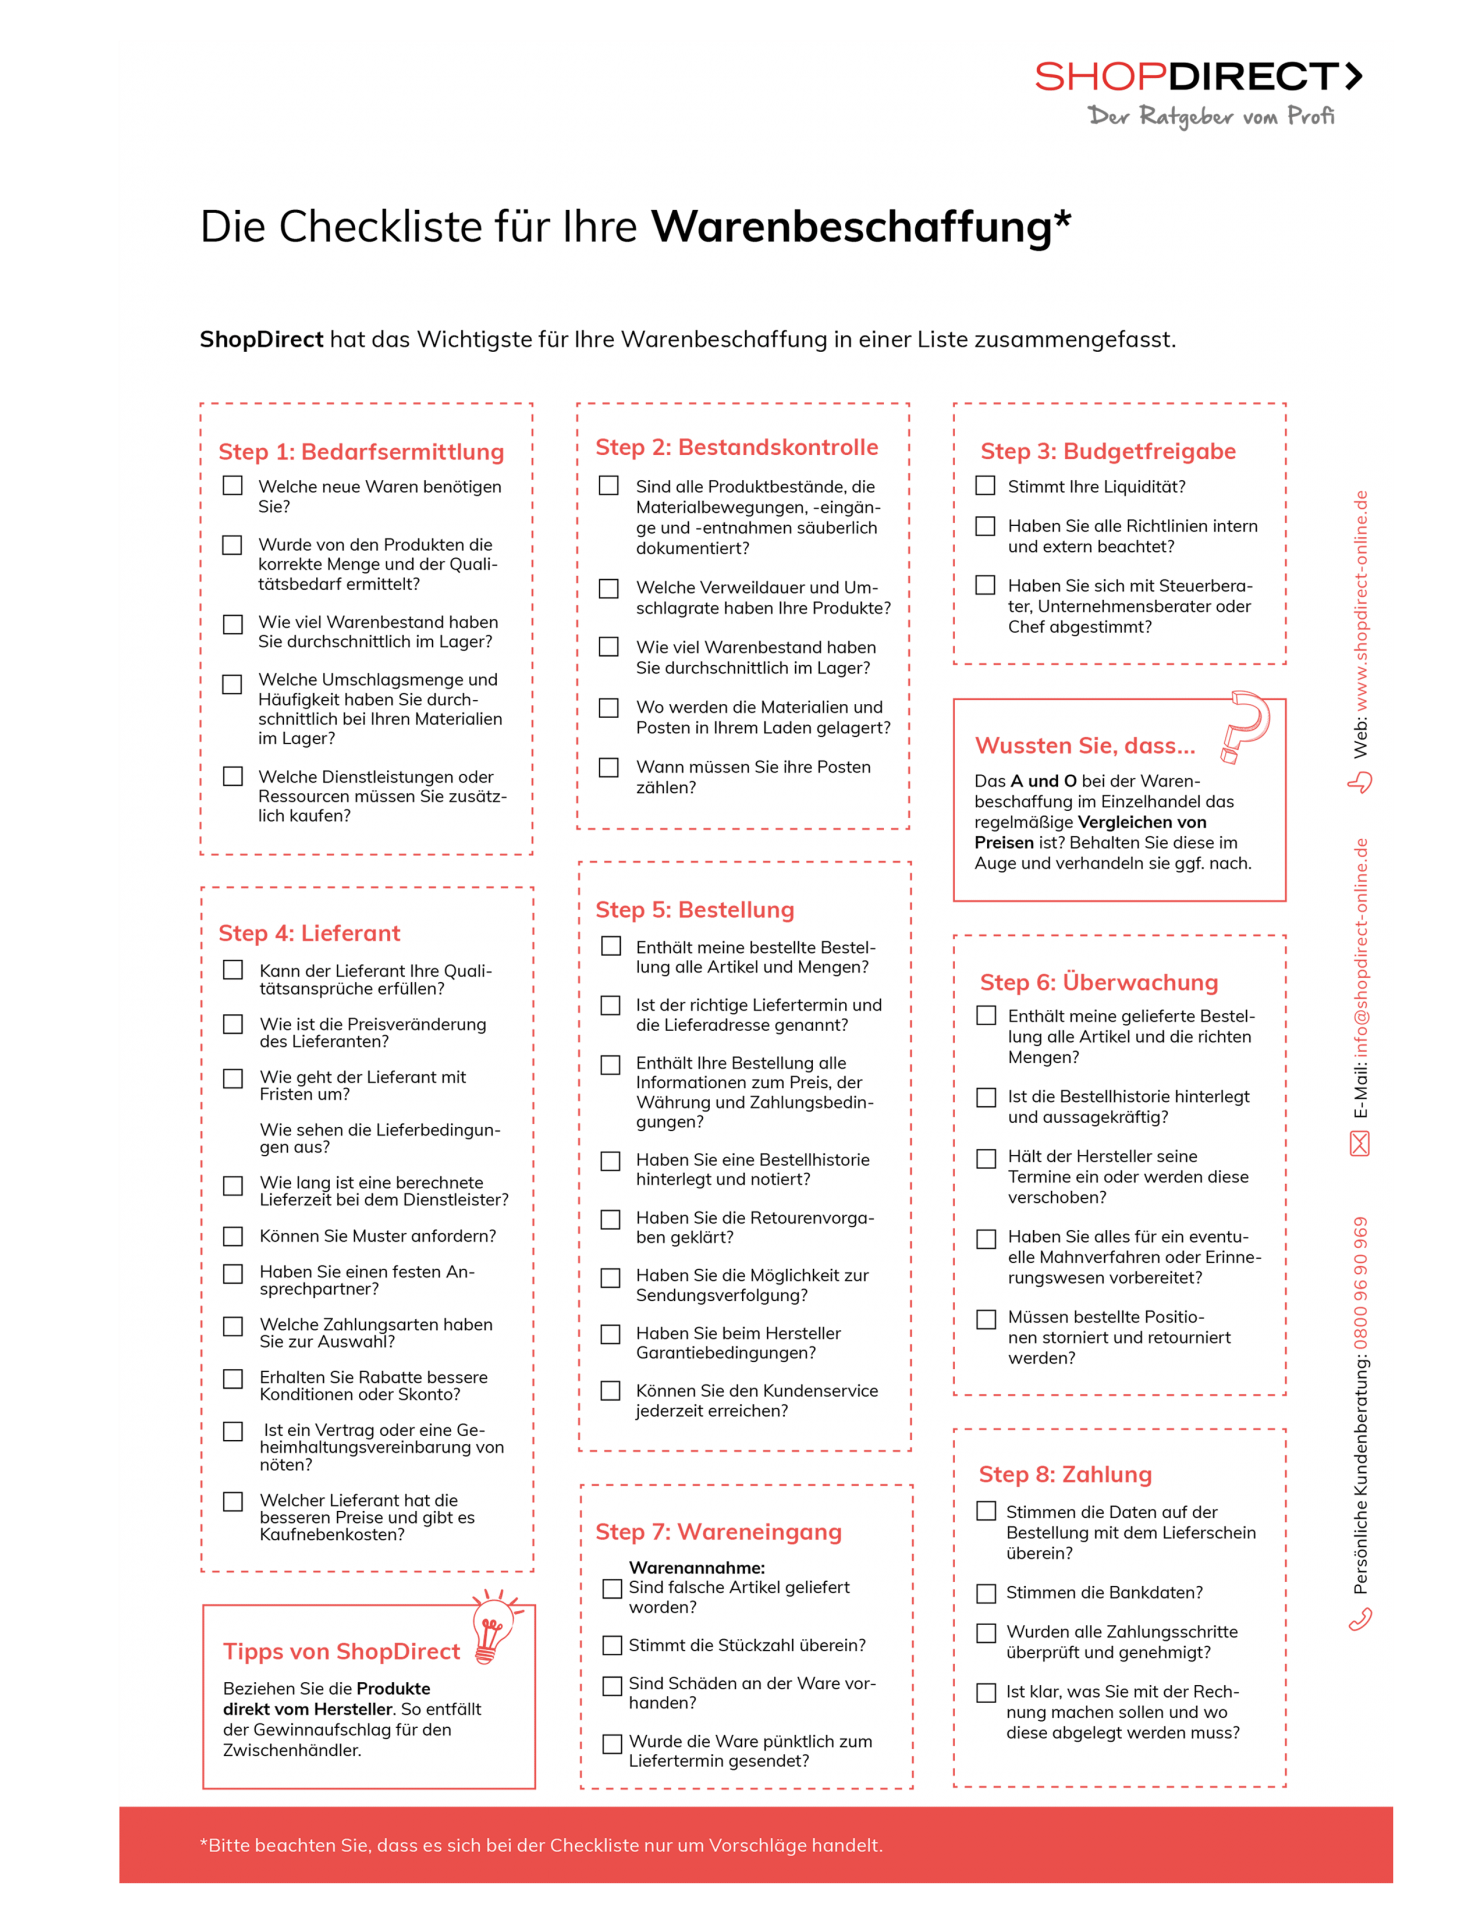 ShopDirect Checkliste Warenbeschaffung